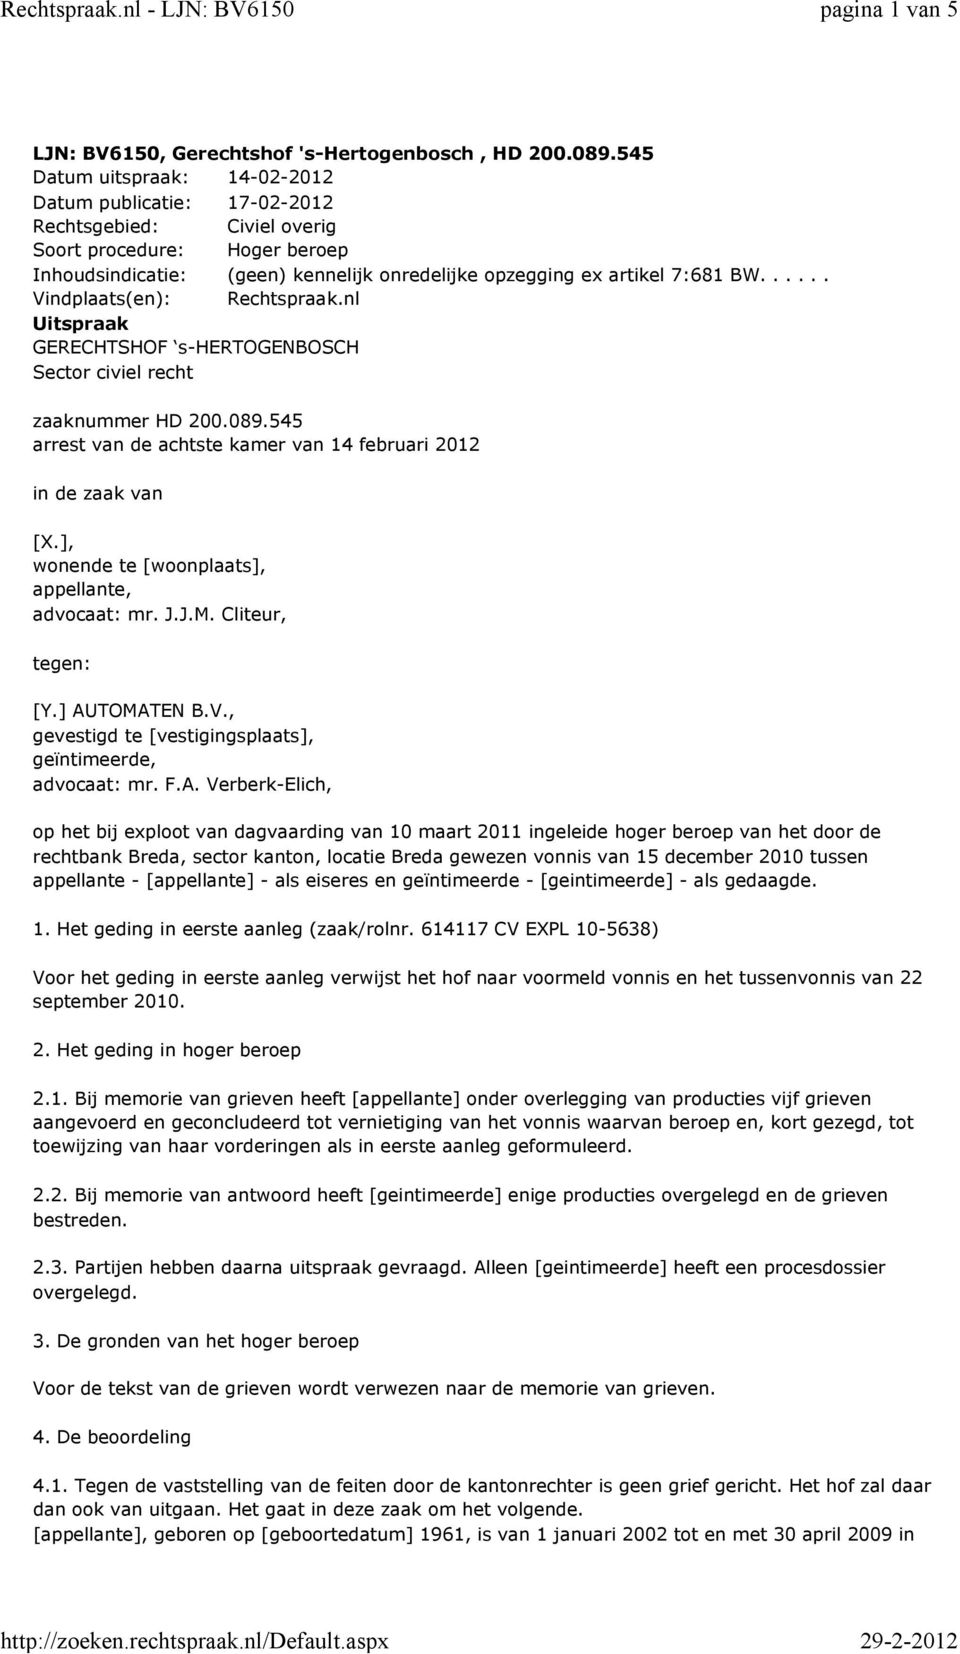 ..... Vindplaats(en): Rechtspraak.nl Uitspraak GERECHTSHOF s-hertogenbosch Sector civiel recht zaaknummer HD 200.089.545 arrest van de achtste kamer van 14 februari 2012 in de zaak van [X.